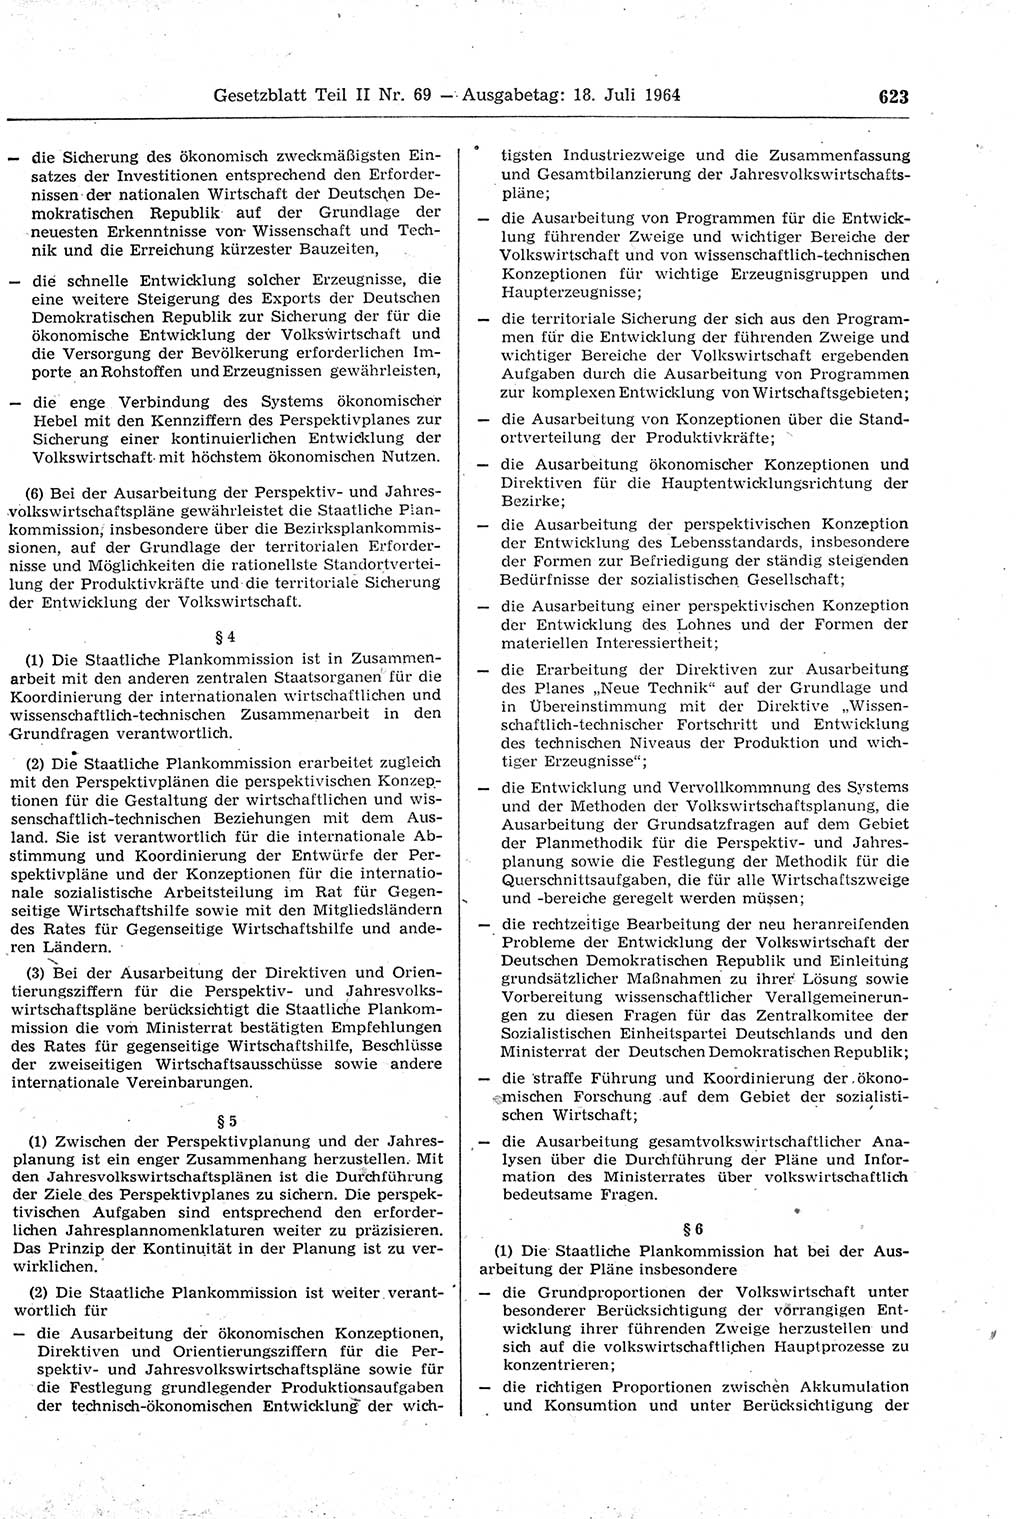 Gesetzblatt (GBl.) der Deutschen Demokratischen Republik (DDR) Teil ⅠⅠ 1964, Seite 623 (GBl. DDR ⅠⅠ 1964, S. 623)